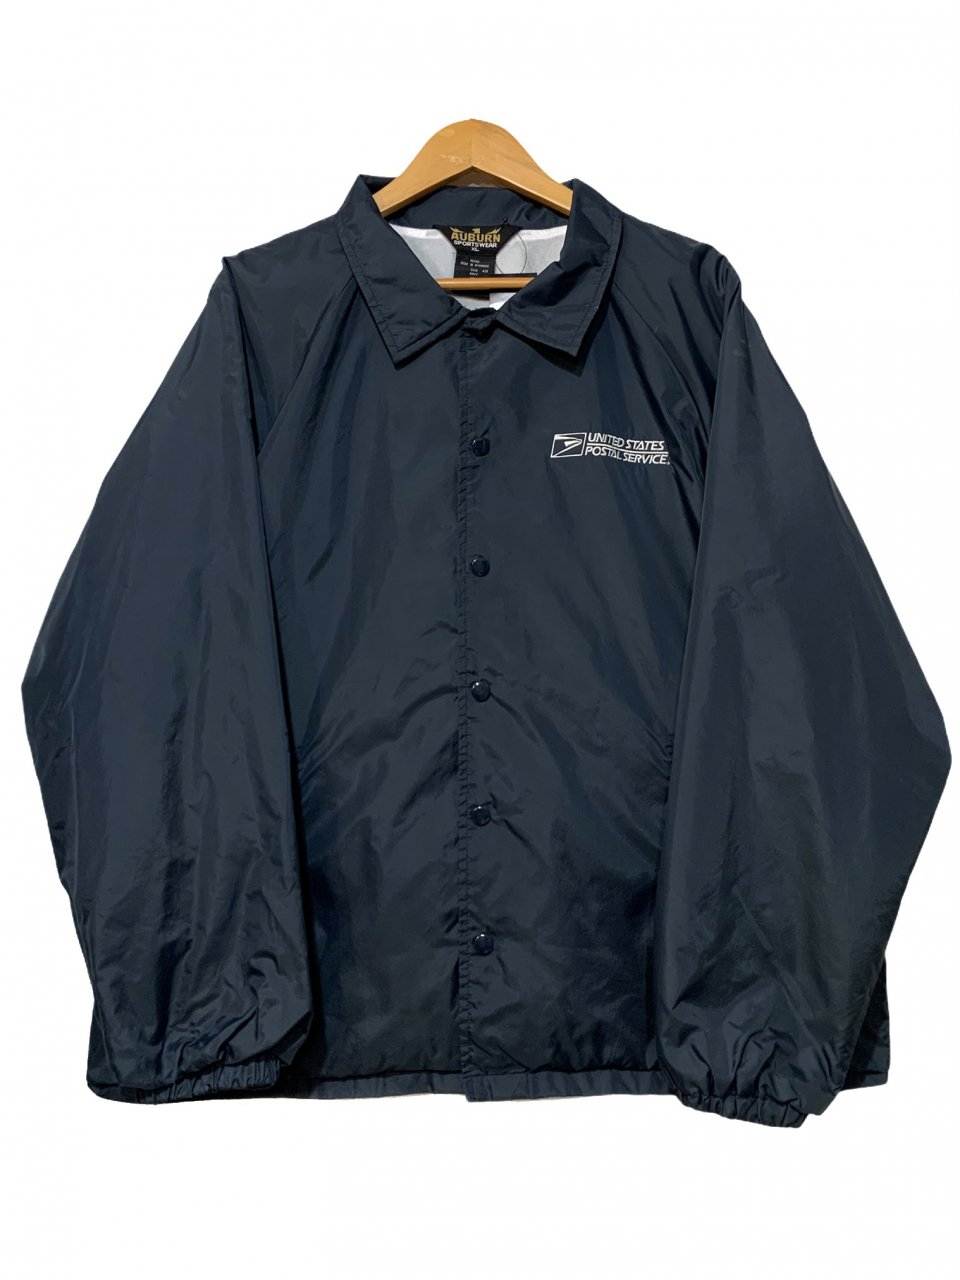 90s VINTAGE nylon coach jacket XXXl